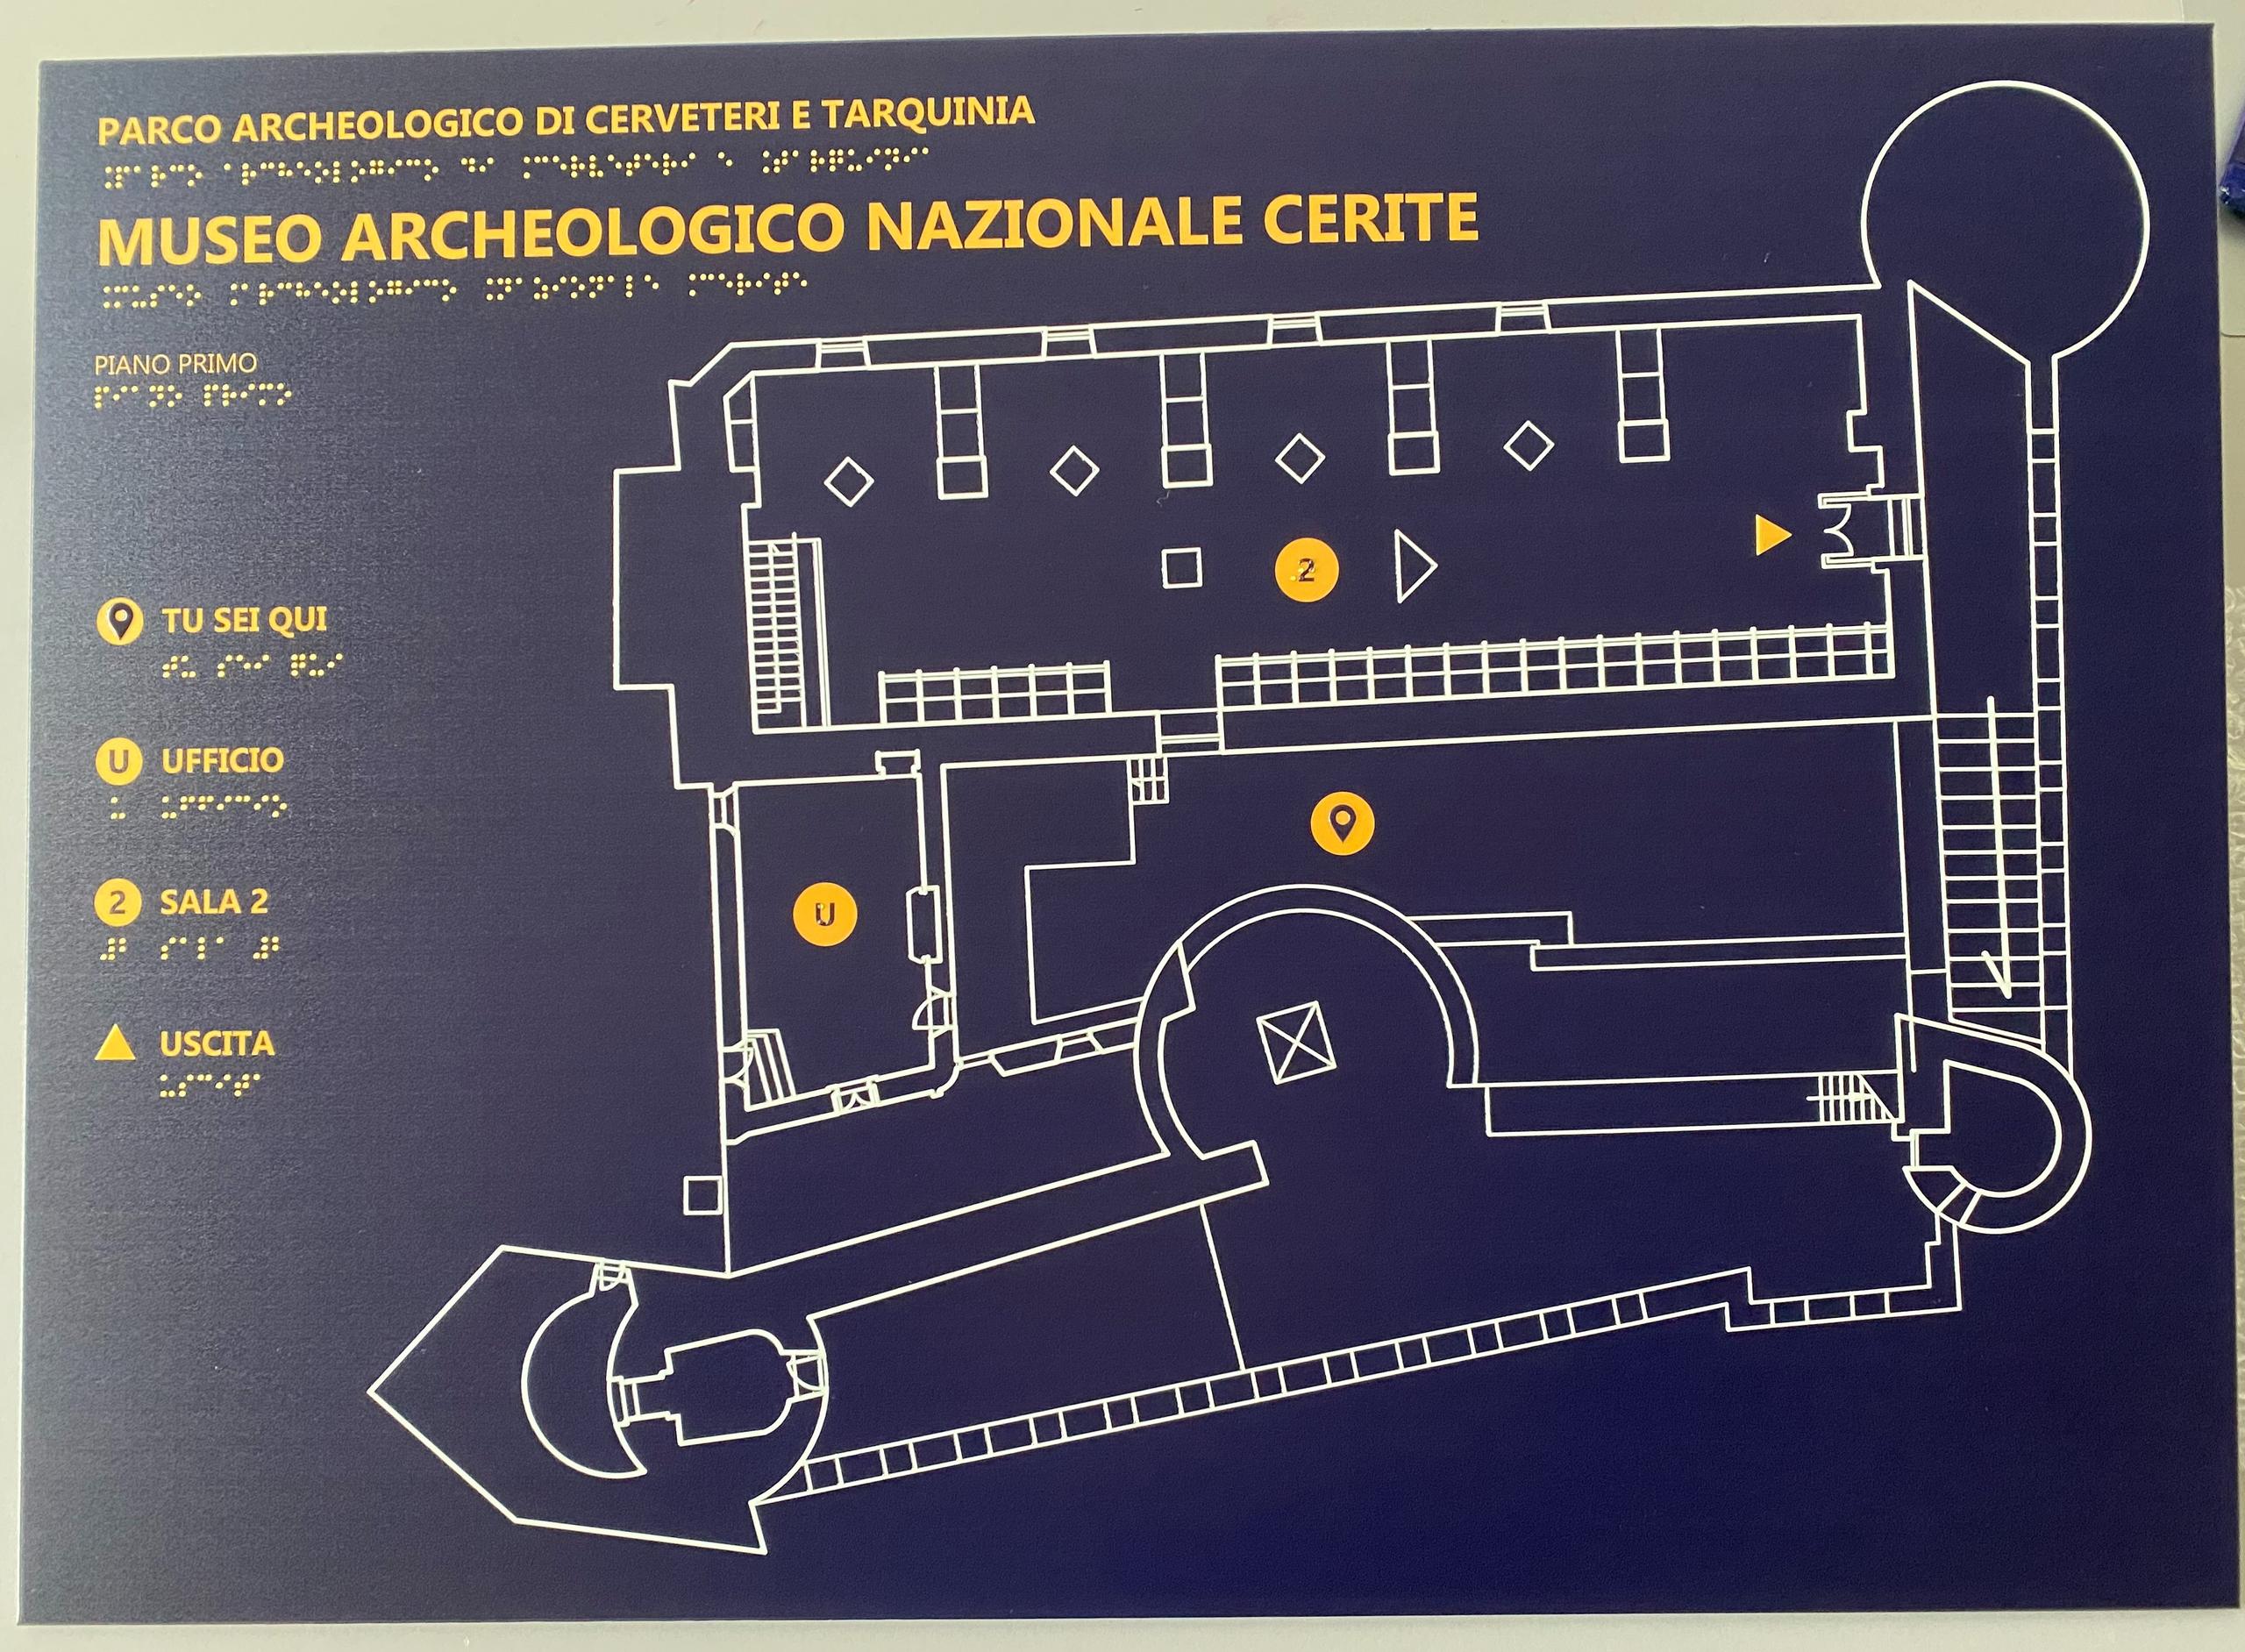 Mappa tattile Museo di Cerveteri e Tarquinia